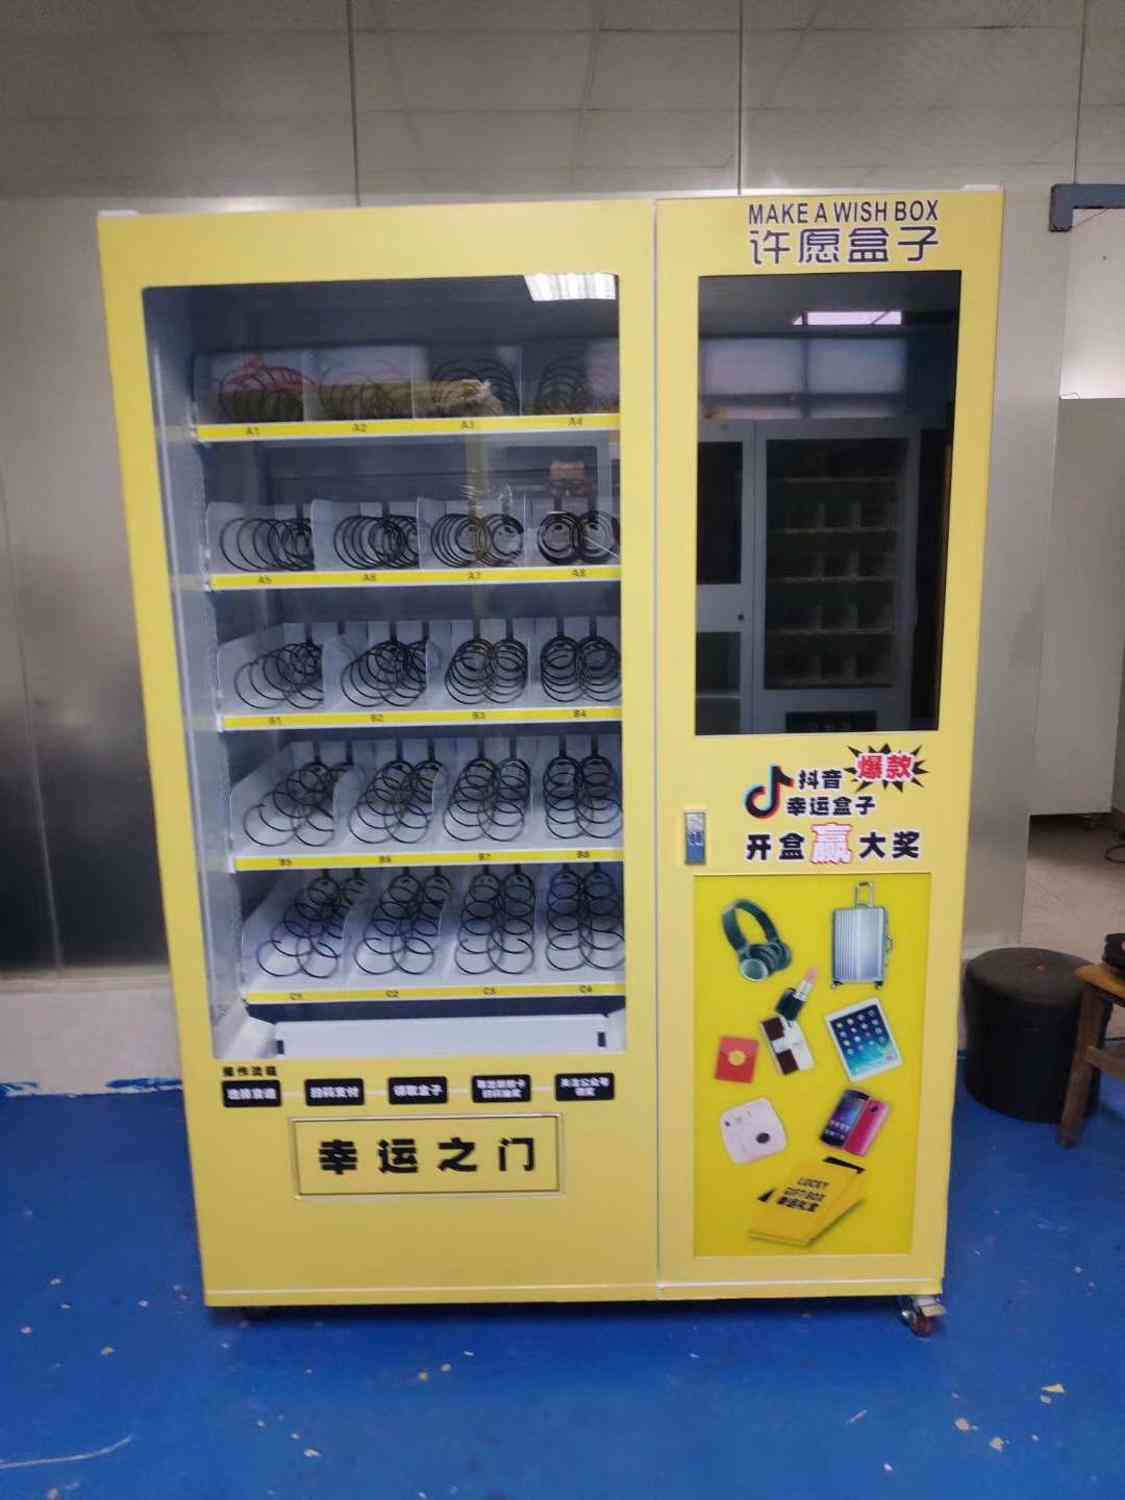 Självbetjäningsbutiker, drycker och snacks - automatautomatsskåp